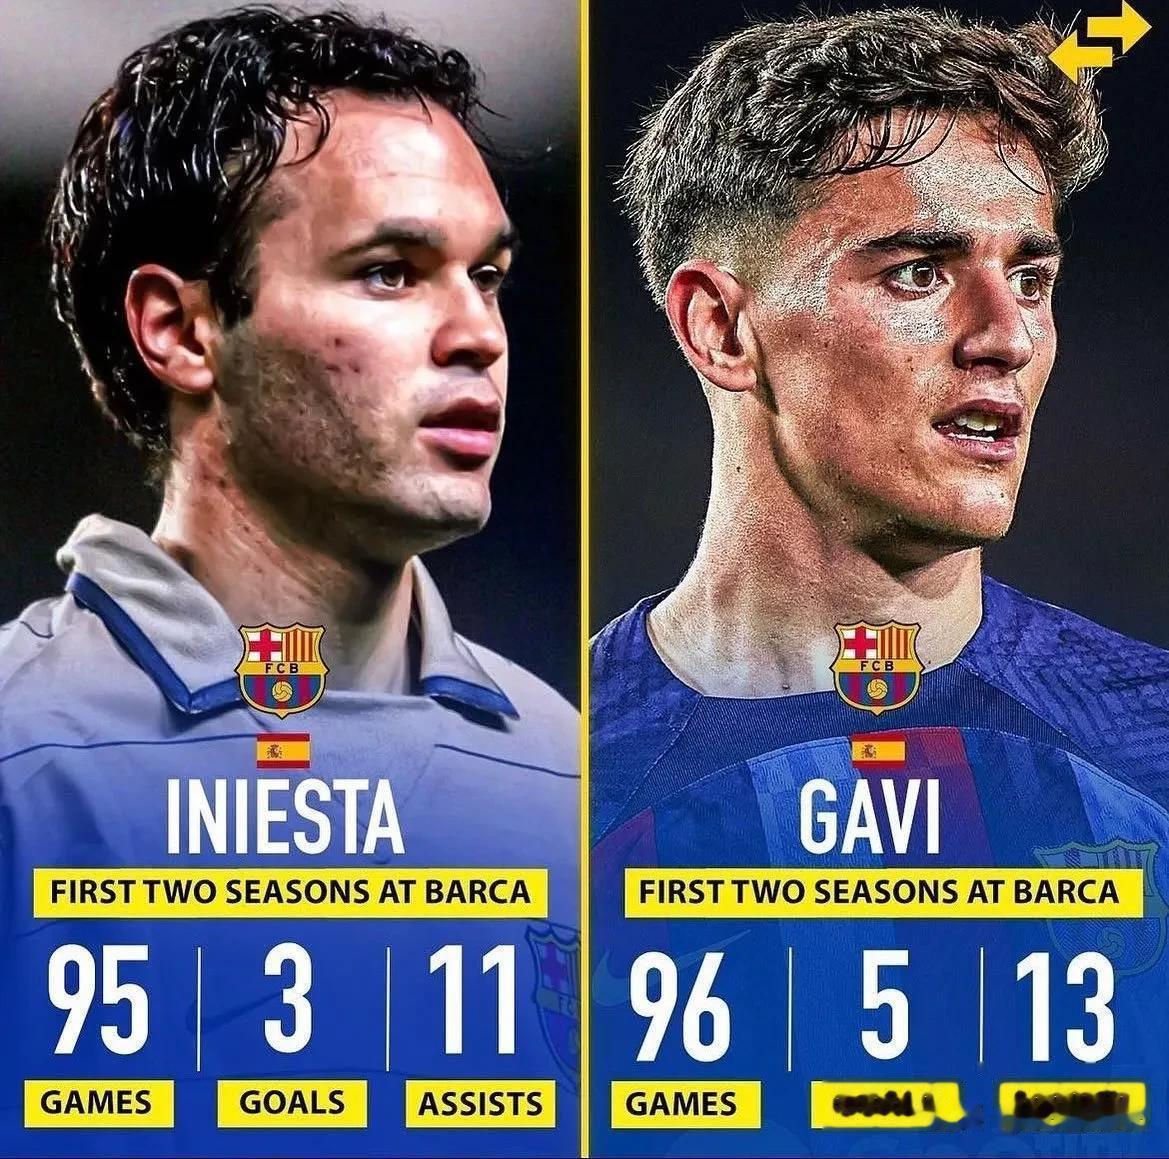 巴萨小将加维与伊涅斯塔在职业生涯前两个赛季的数据对比，在进攻端的数据表现还要好于